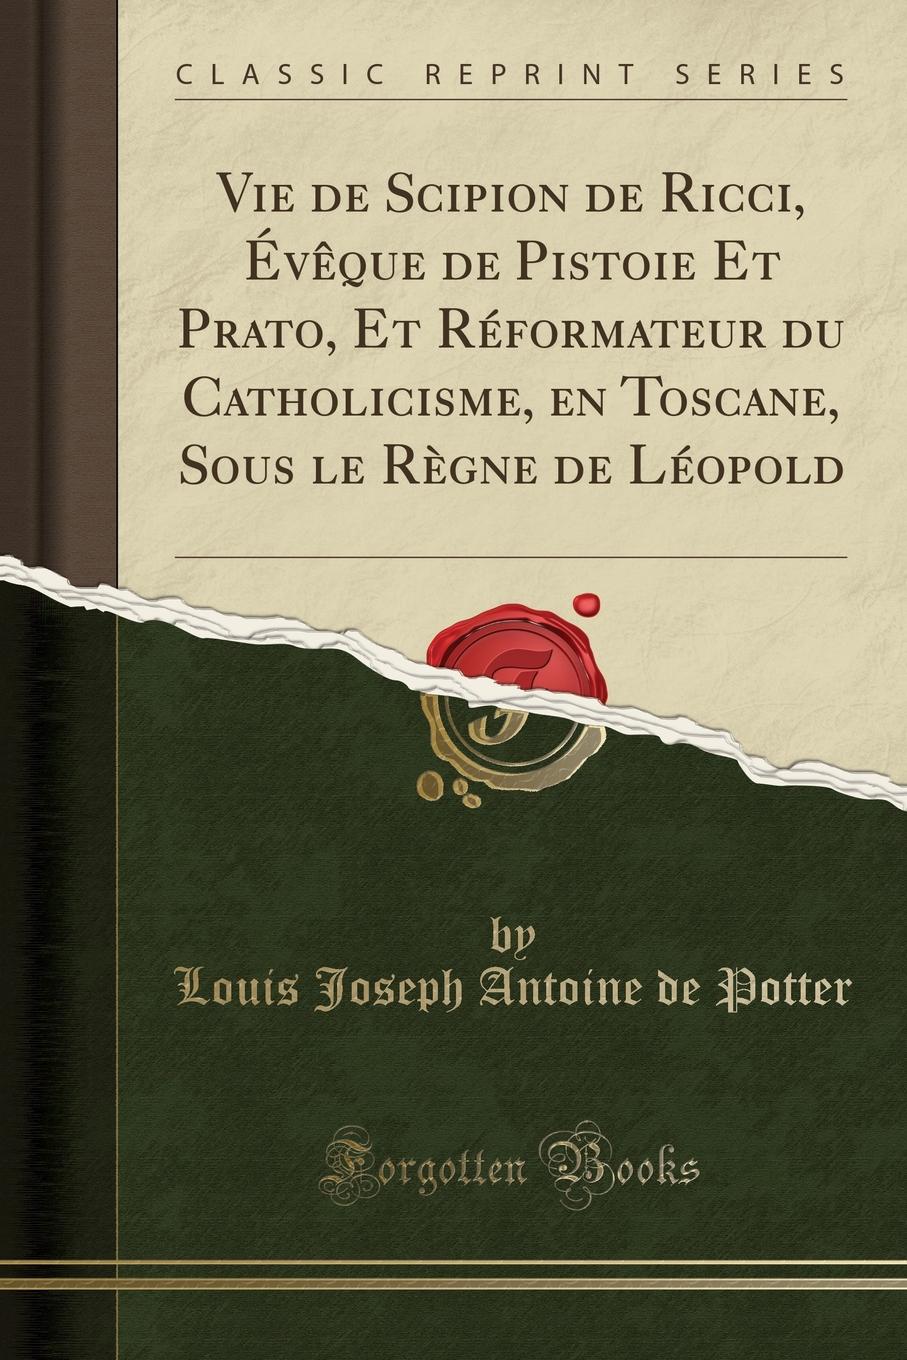 Vie de Scipion de Ricci, Eveque de Pistoie Et Prato, Et Reformateur du Catholicisme, en Toscane, Sous le Regne de Leopold (Classic Reprint)